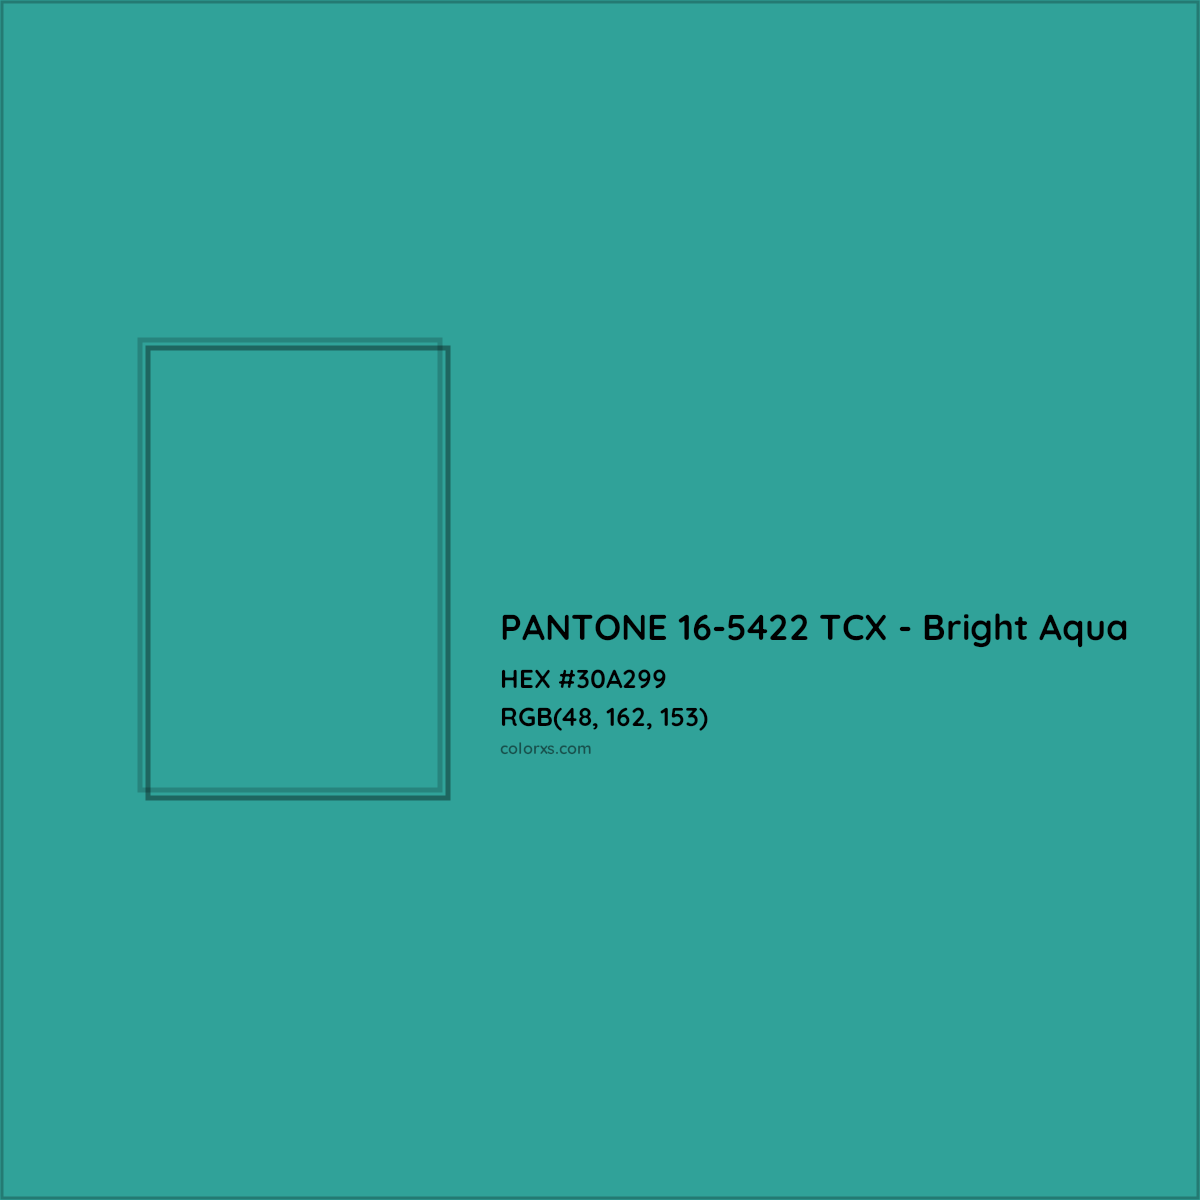 HEX #30A299 PANTONE 16-5422 TCX - Bright Aqua CMS Pantone TCX - Color Code